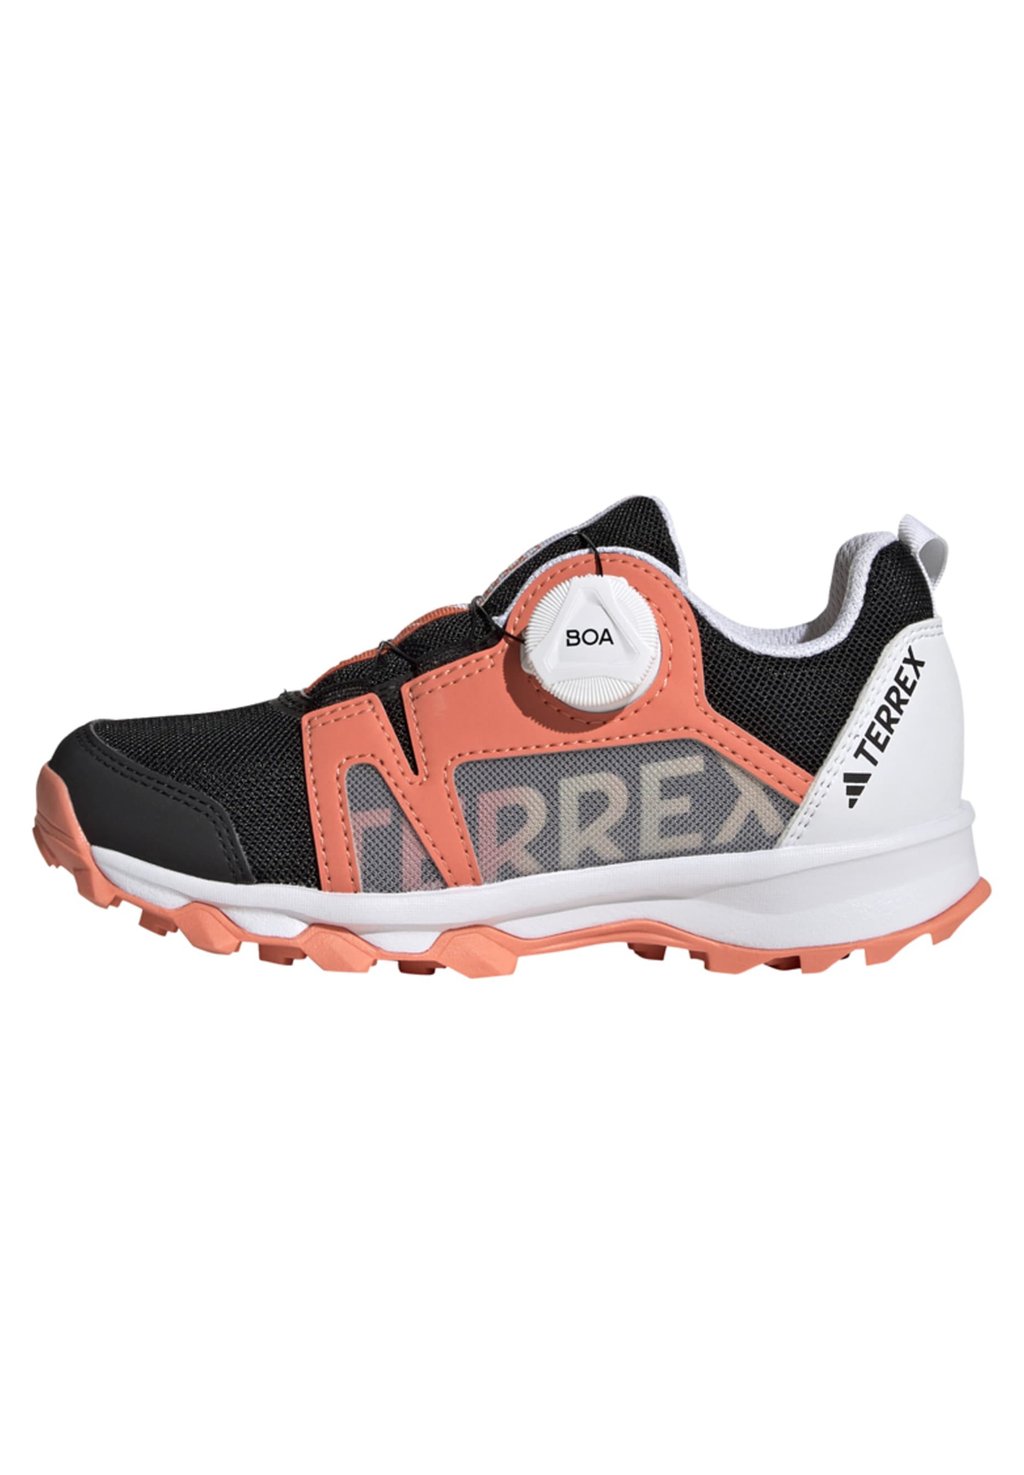 Кроссовки Terrex Agravic Boa Trail Adidas, цвет core black/crystal white/impact orange